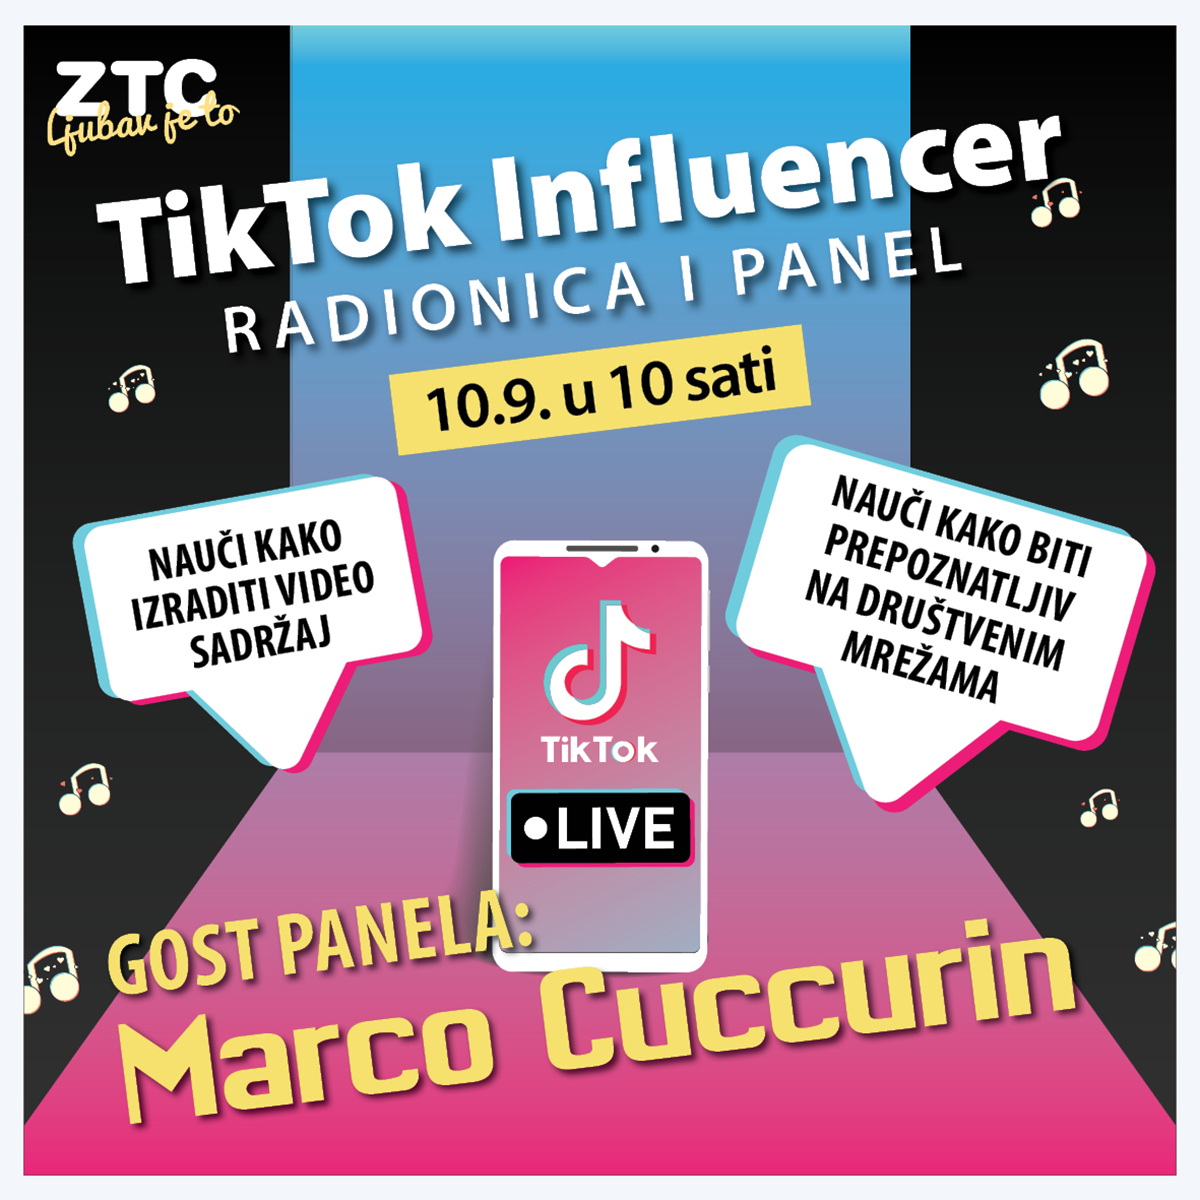 Poznati influenceri na TikTok radionici i panelu u ZTC-u!